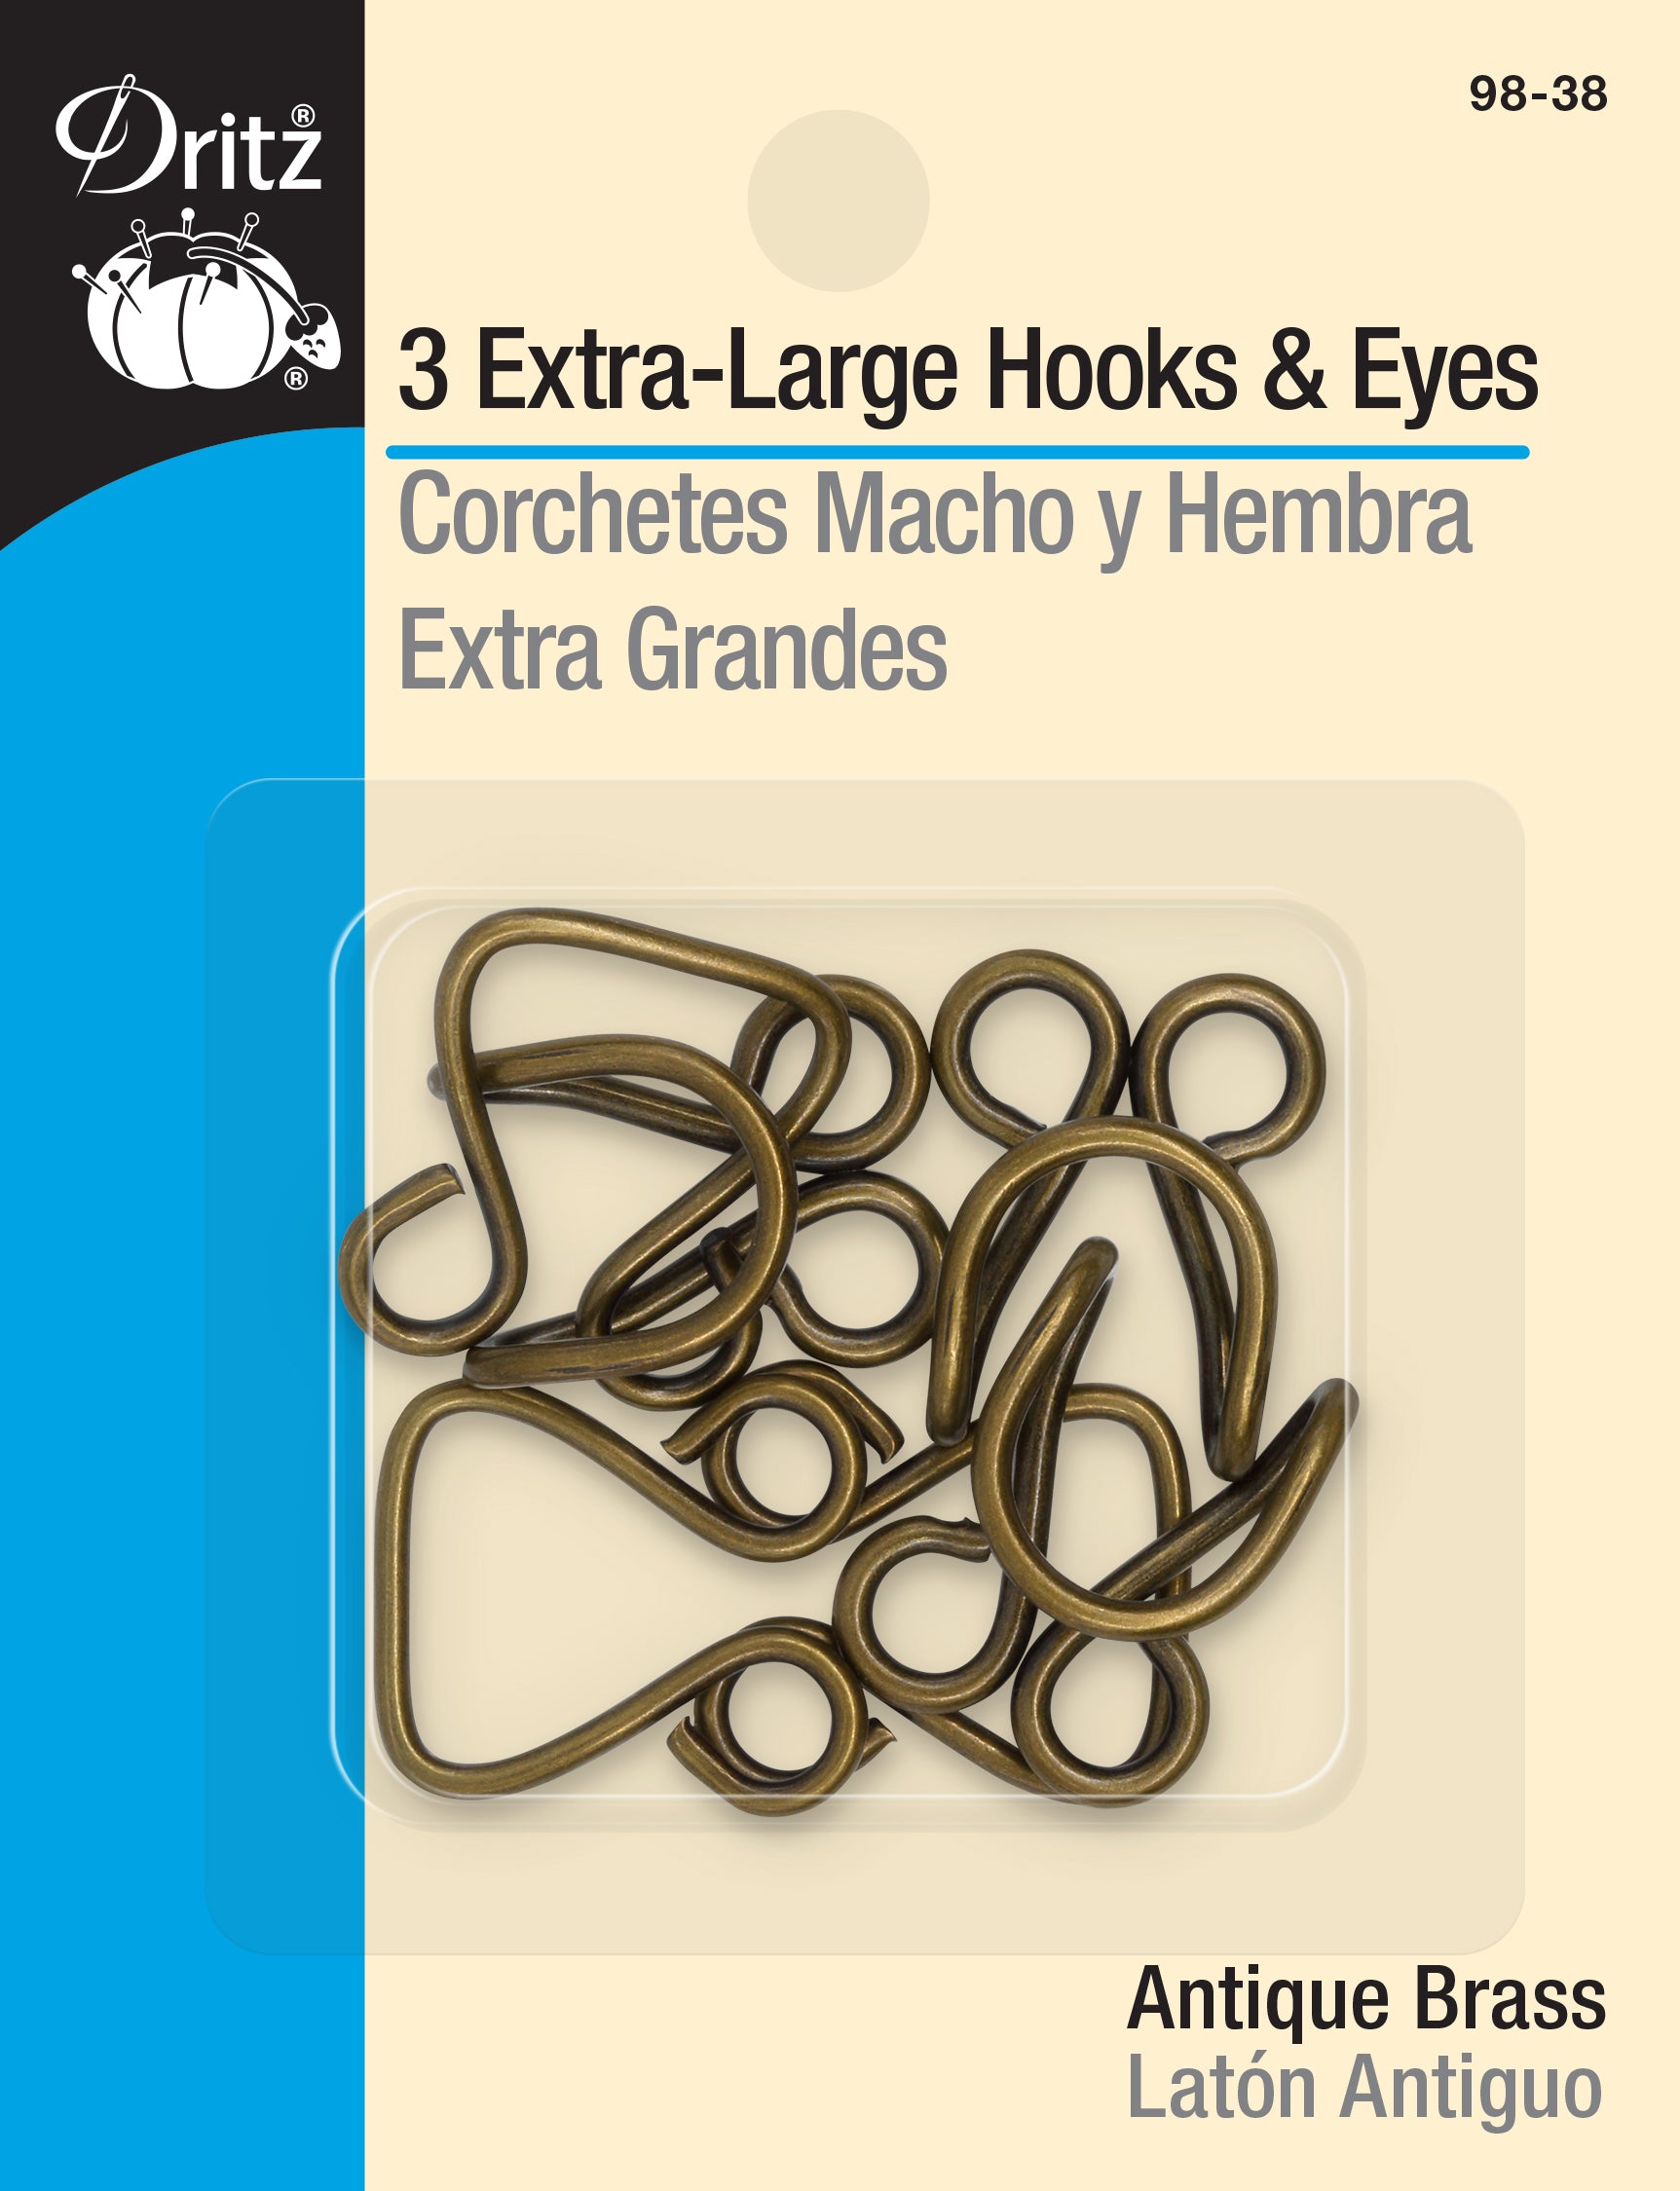 Dritz Extra-Large Hooks & Eyes, 3 Sets